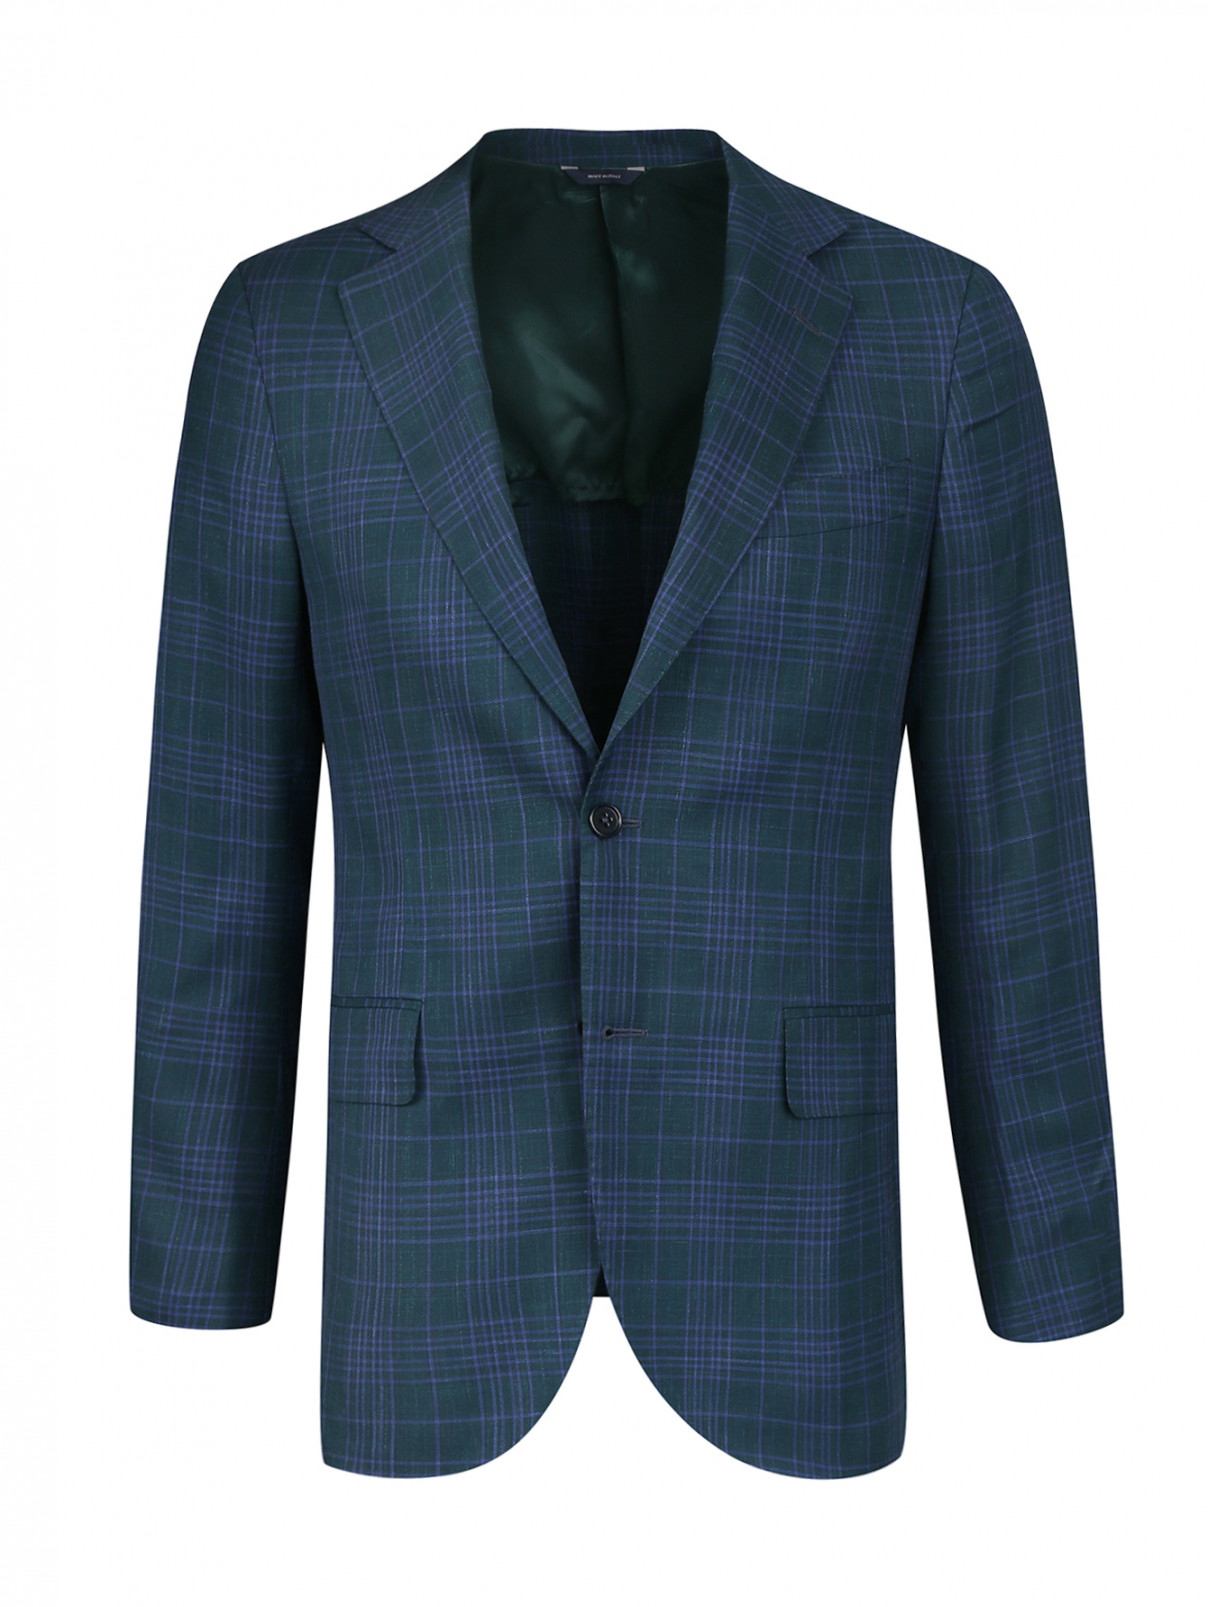 Пиджак из шерсти и шелка Tombolini  –  Общий вид  – Цвет:  Зеленый